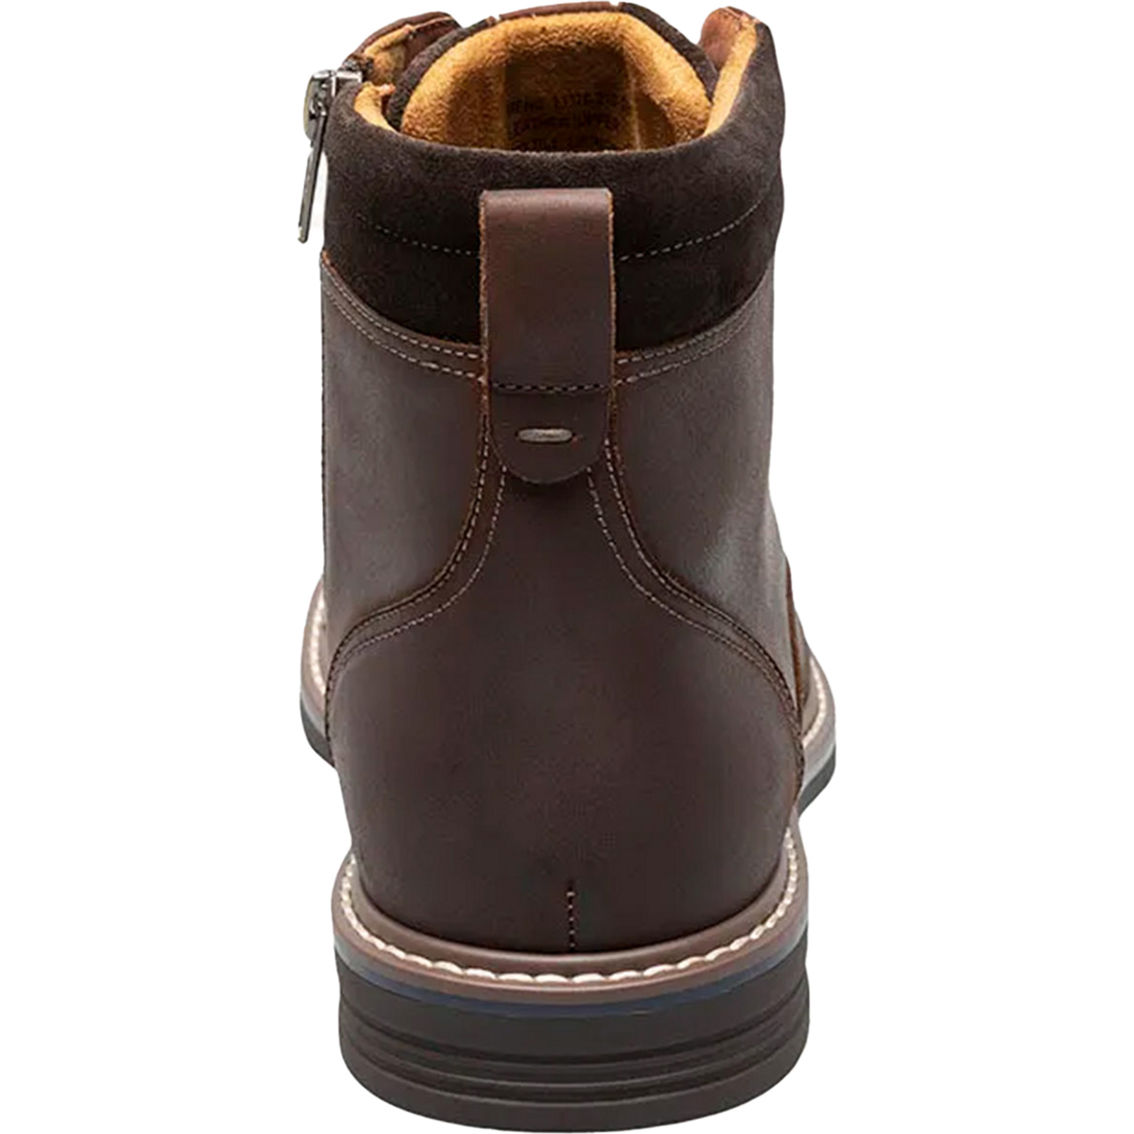 Florsheim Norwalk Plain Toe Lace Up Boots - Image 7 of 8